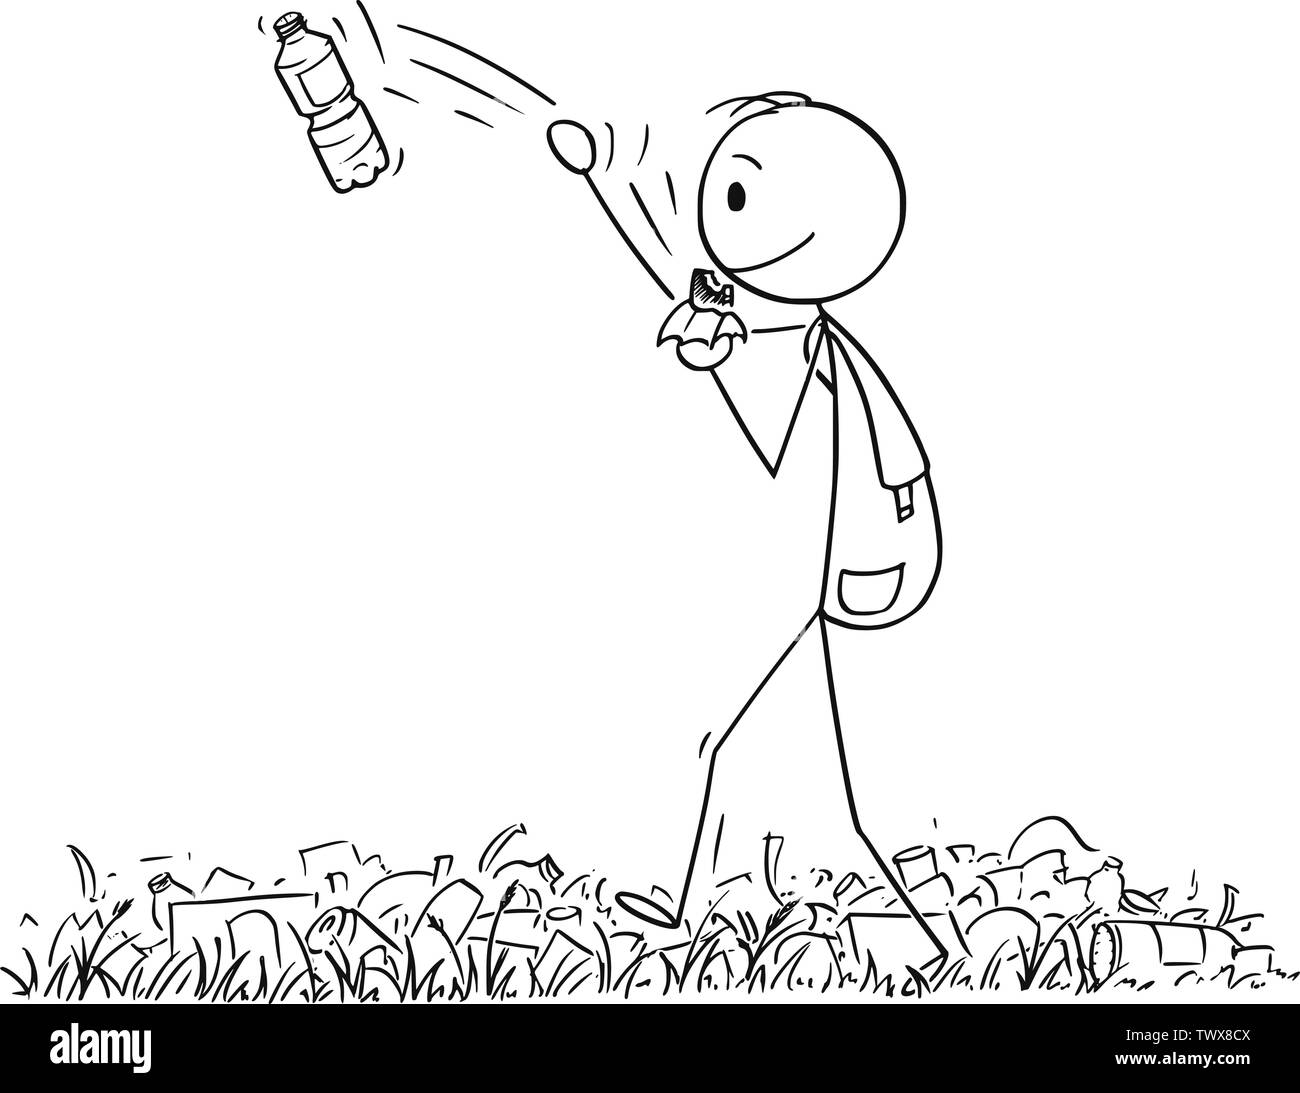 Vektor cartoon Strichmännchen Zeichnen konzeptionelle Darstellung der Wanderer oder Mann mit Rucksack wandern oder Wandern in der Natur voller Müll und Abfall, und werfen Plastikflasche entfernt. Stock Vektor